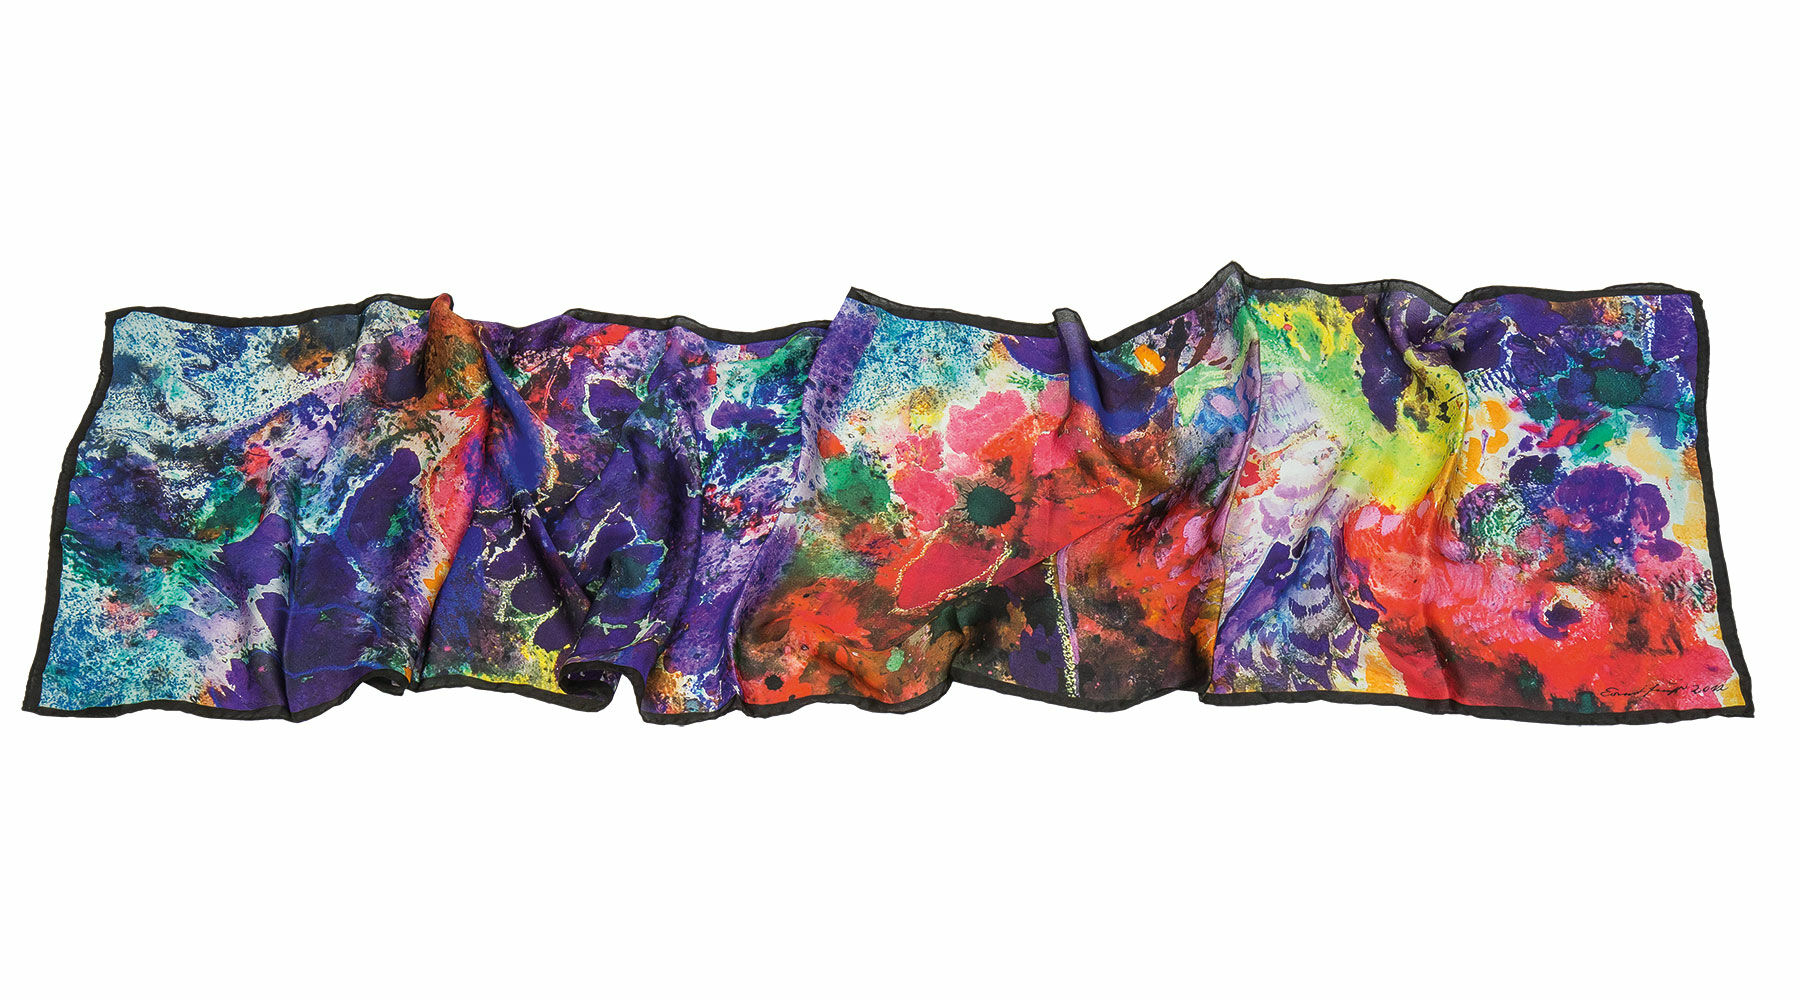 Silketørklæde "En buket blomster fra paradis" von Ernst Fuchs